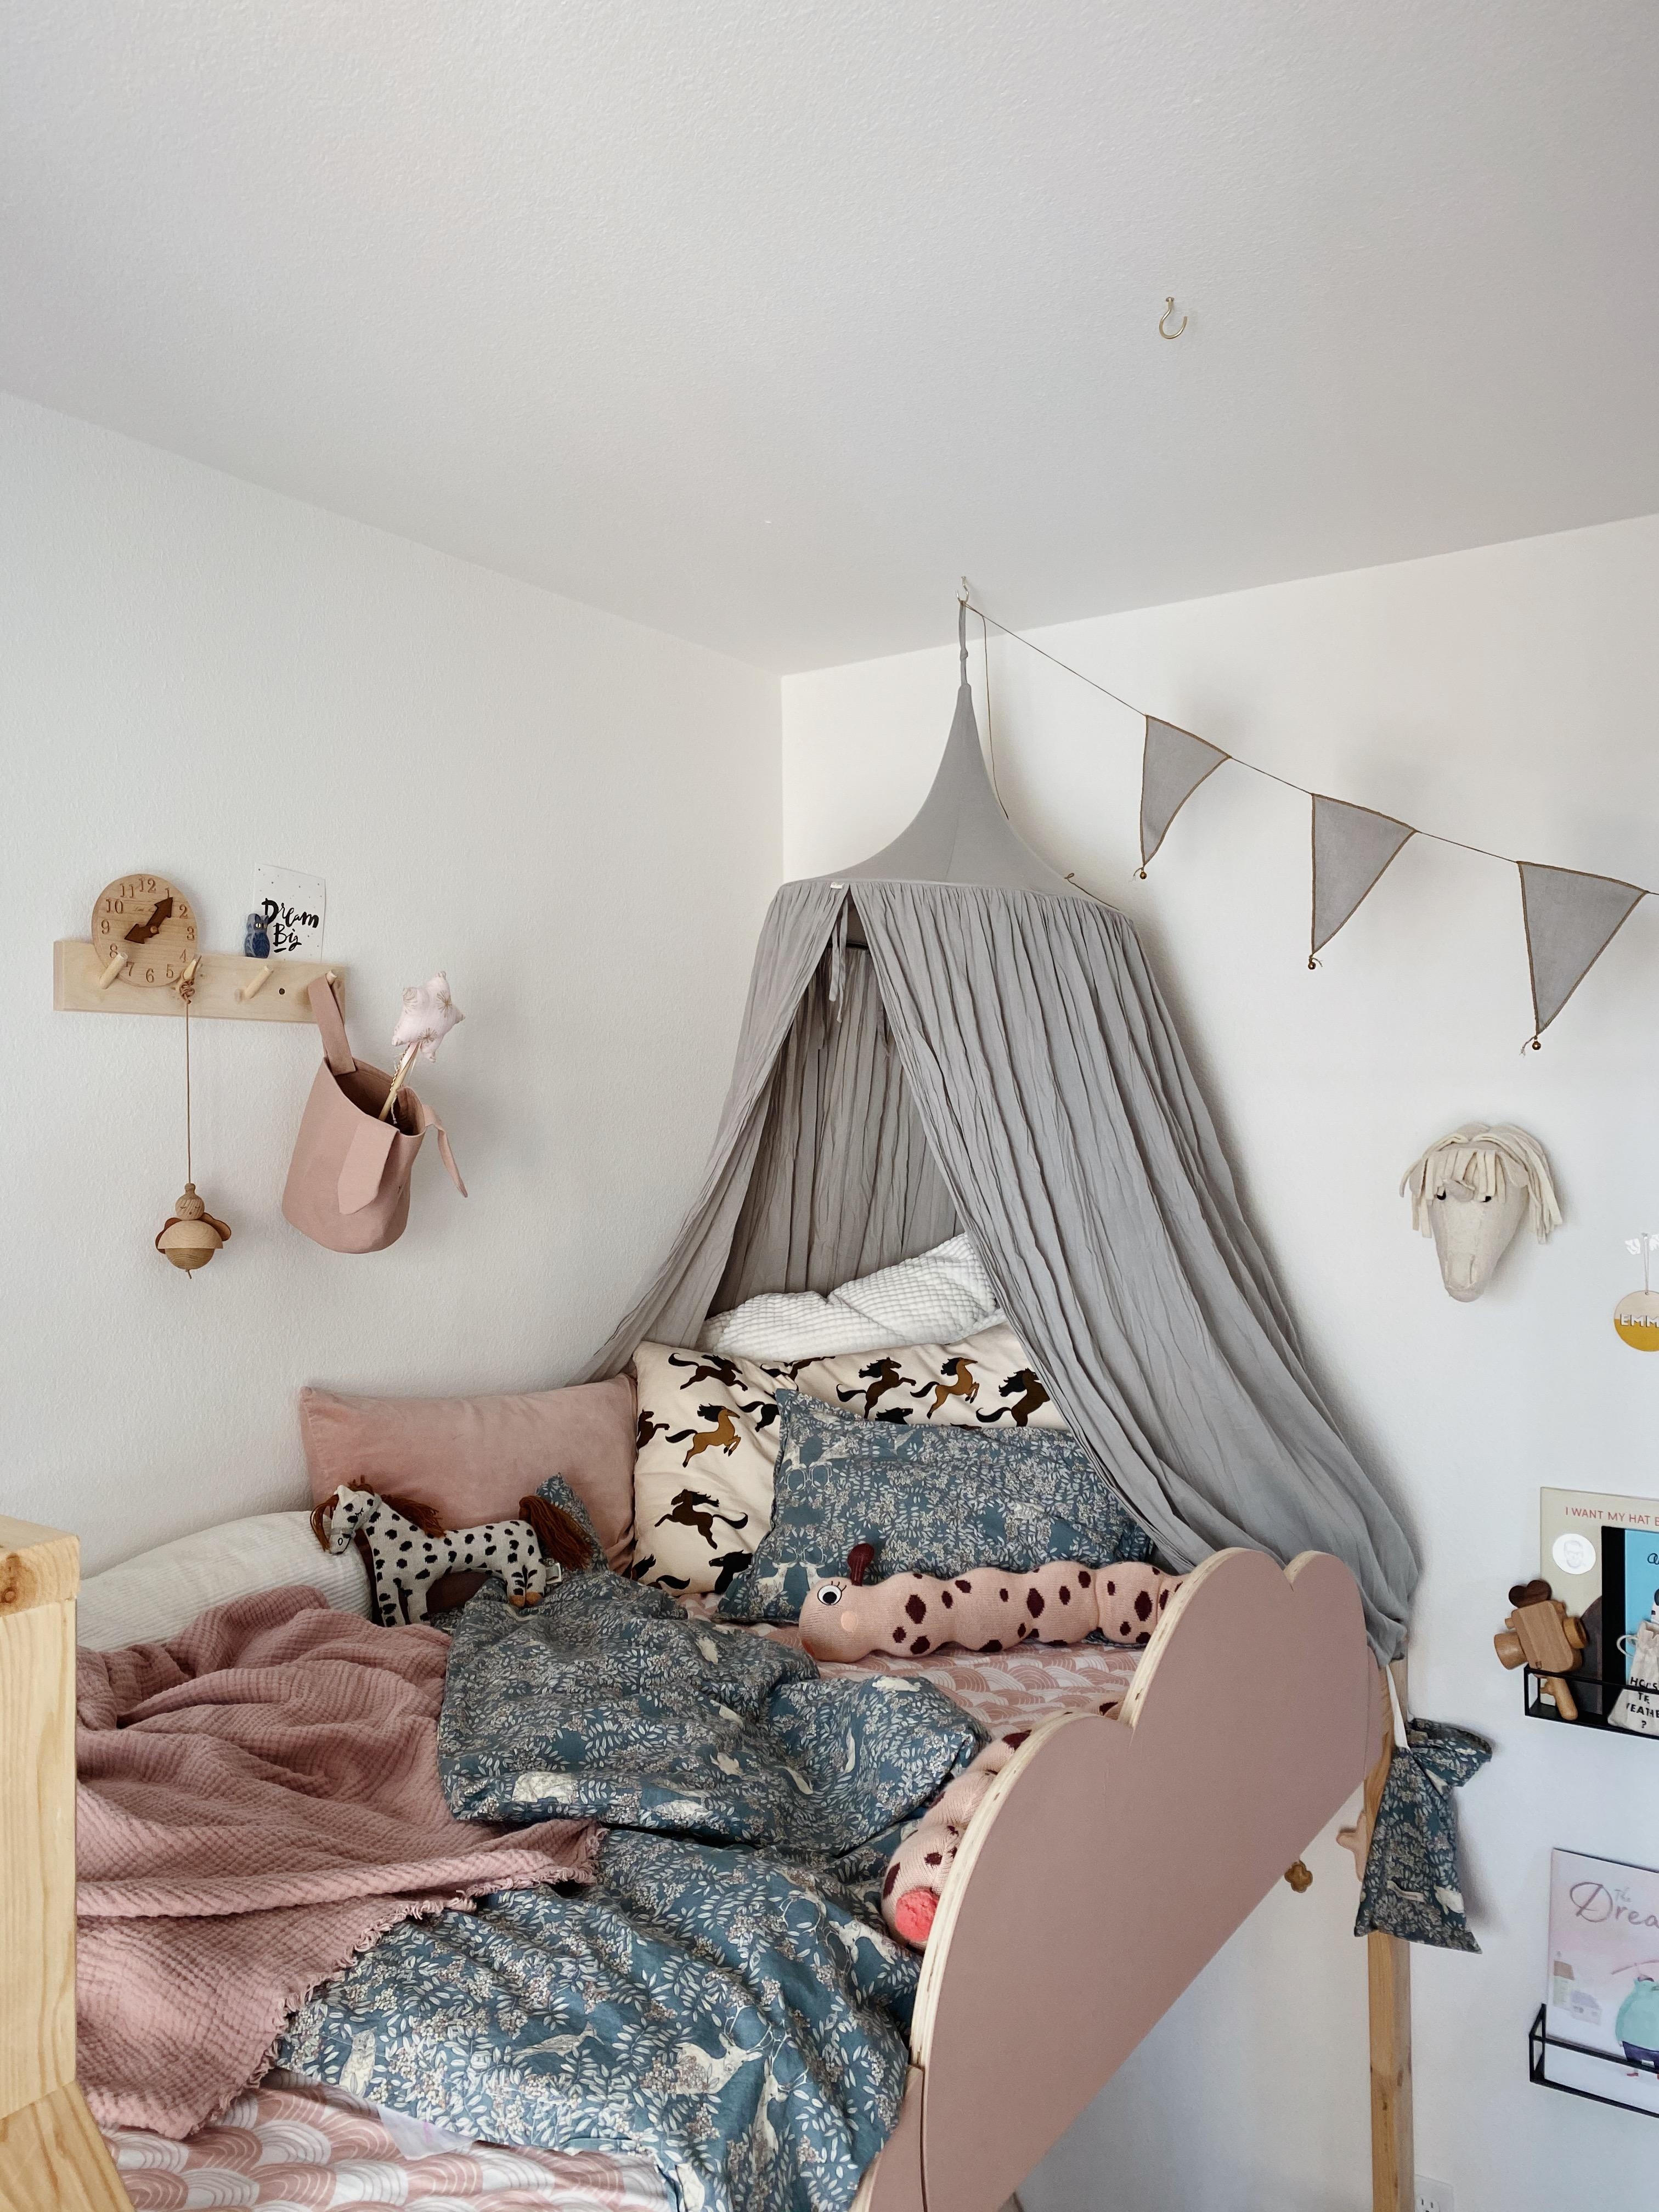 Cozy corner im Kinderzimmer #loftbed #gutenacht #kinderzimmer #gemütlich